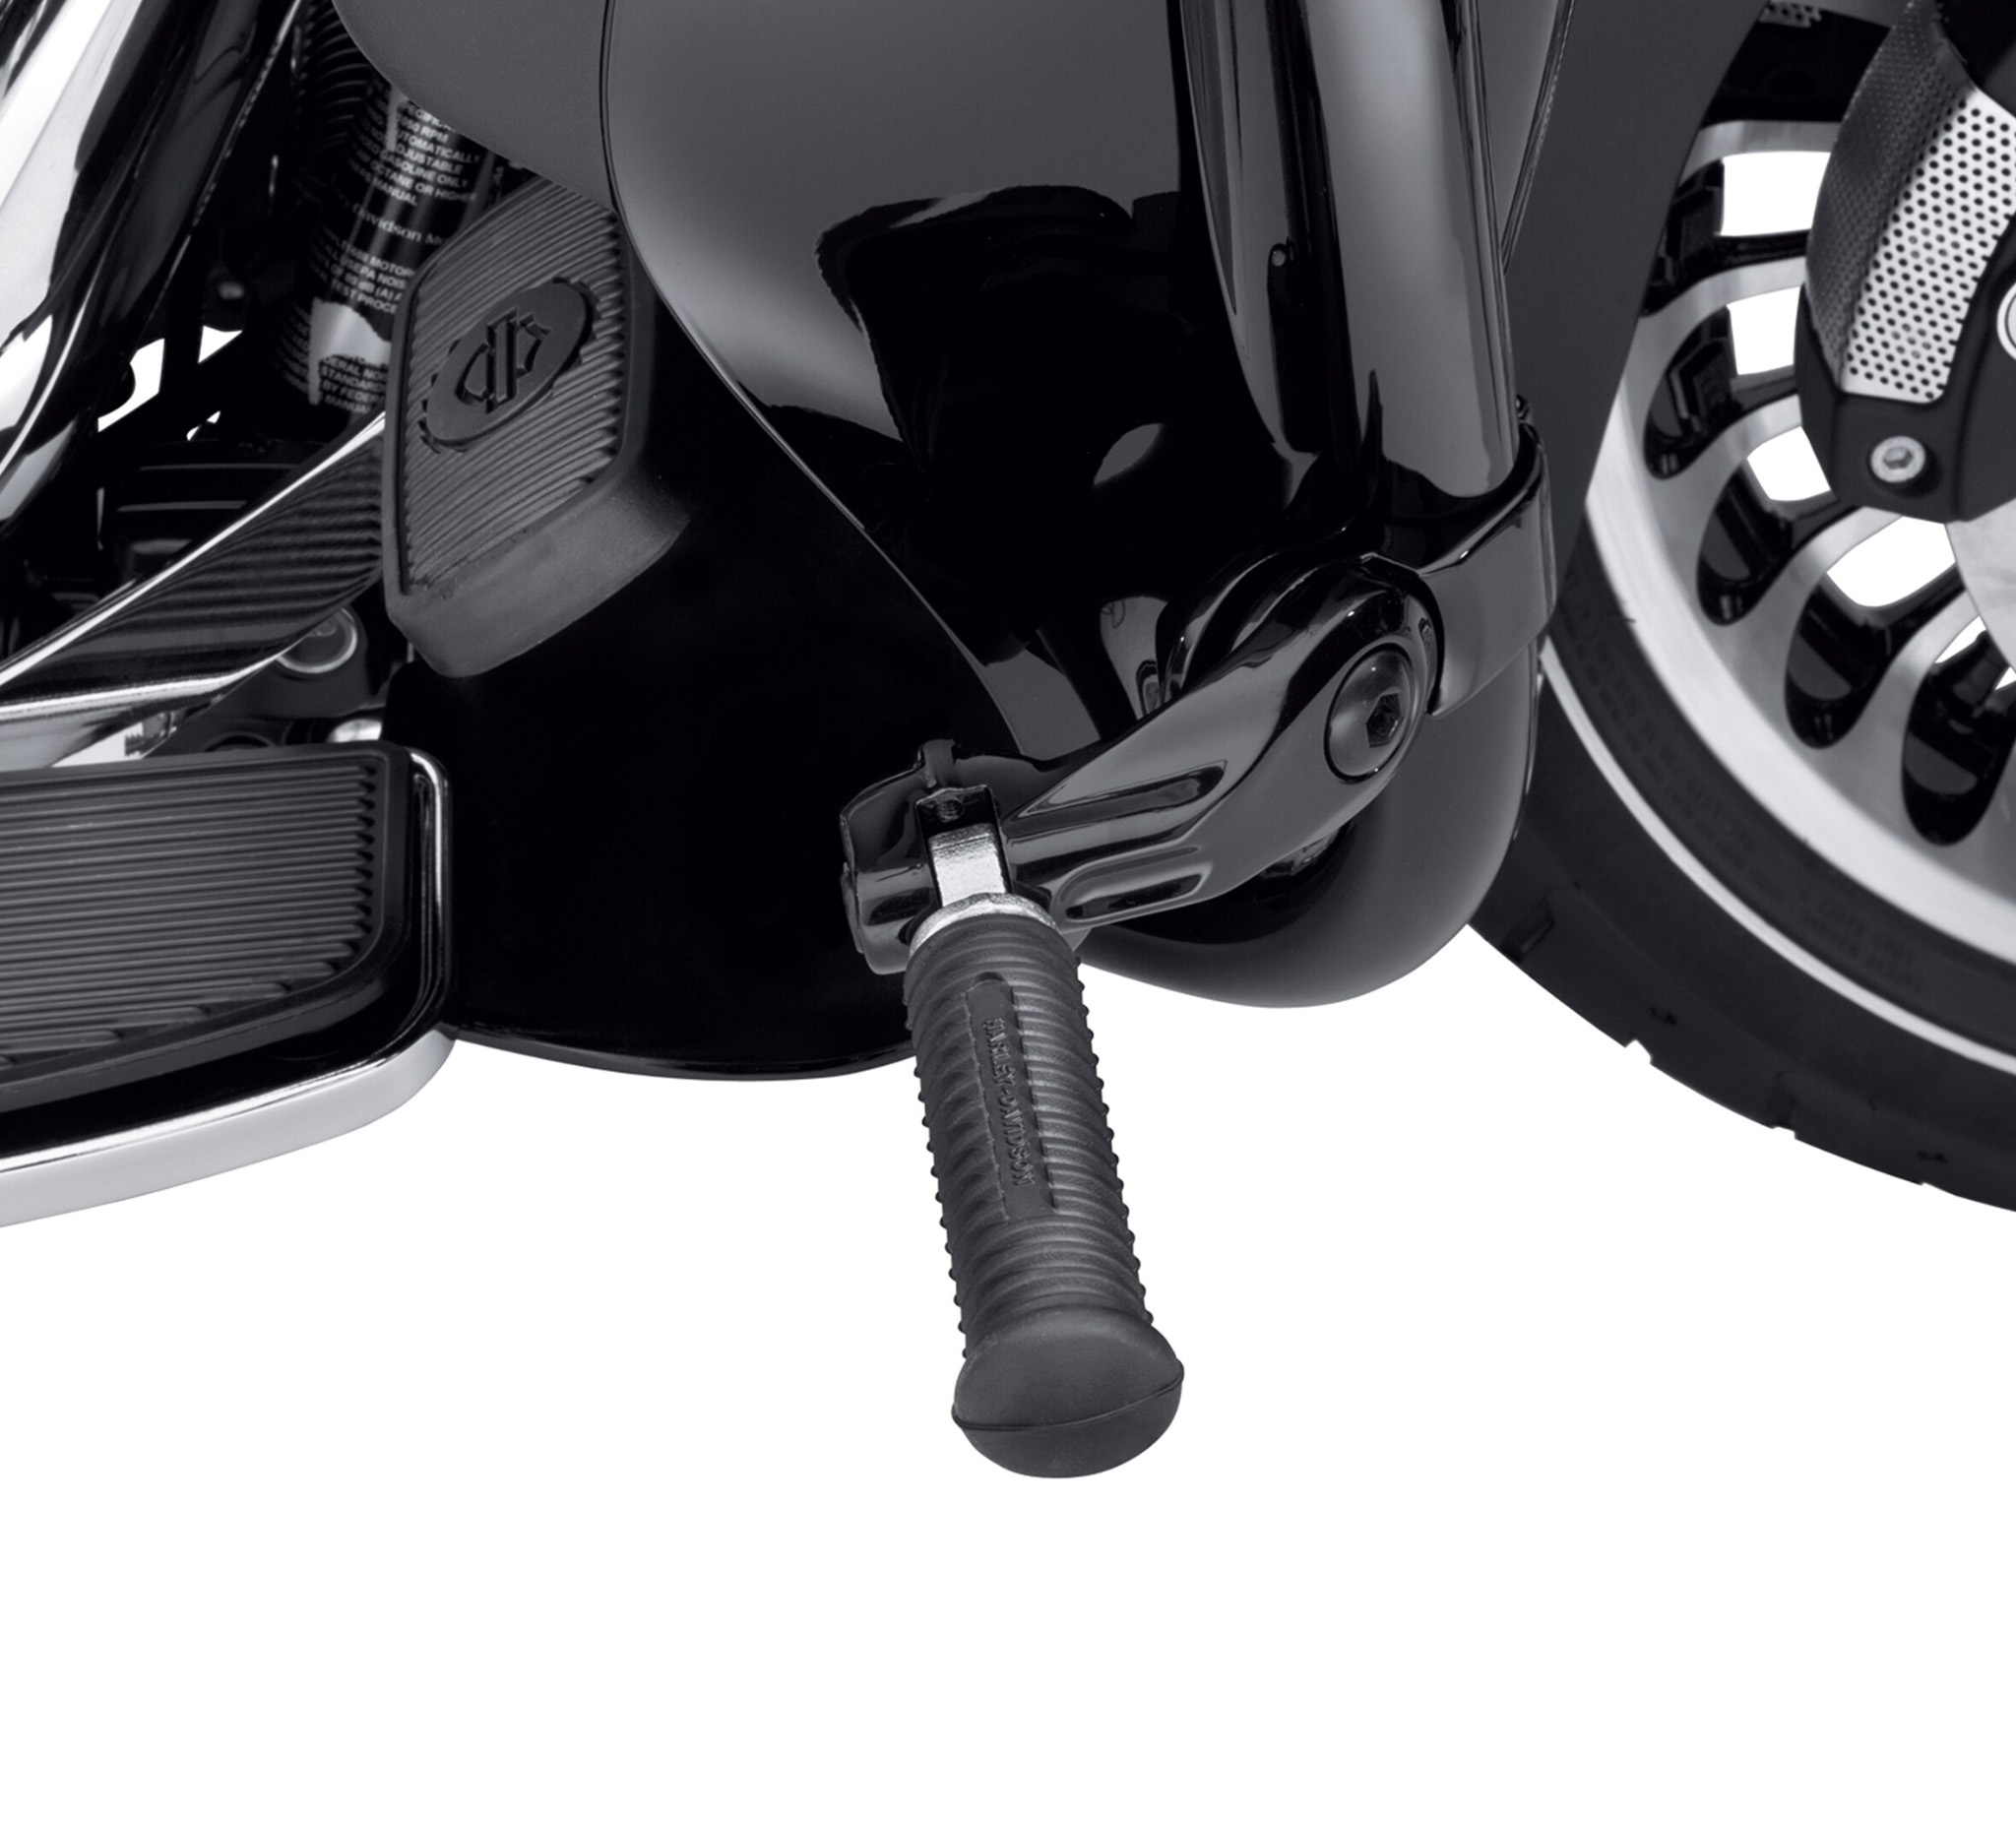 1.25/" Engine Crash Bar Highway Foot Peg Mount Clamp Bracket Kit Fit For Harley